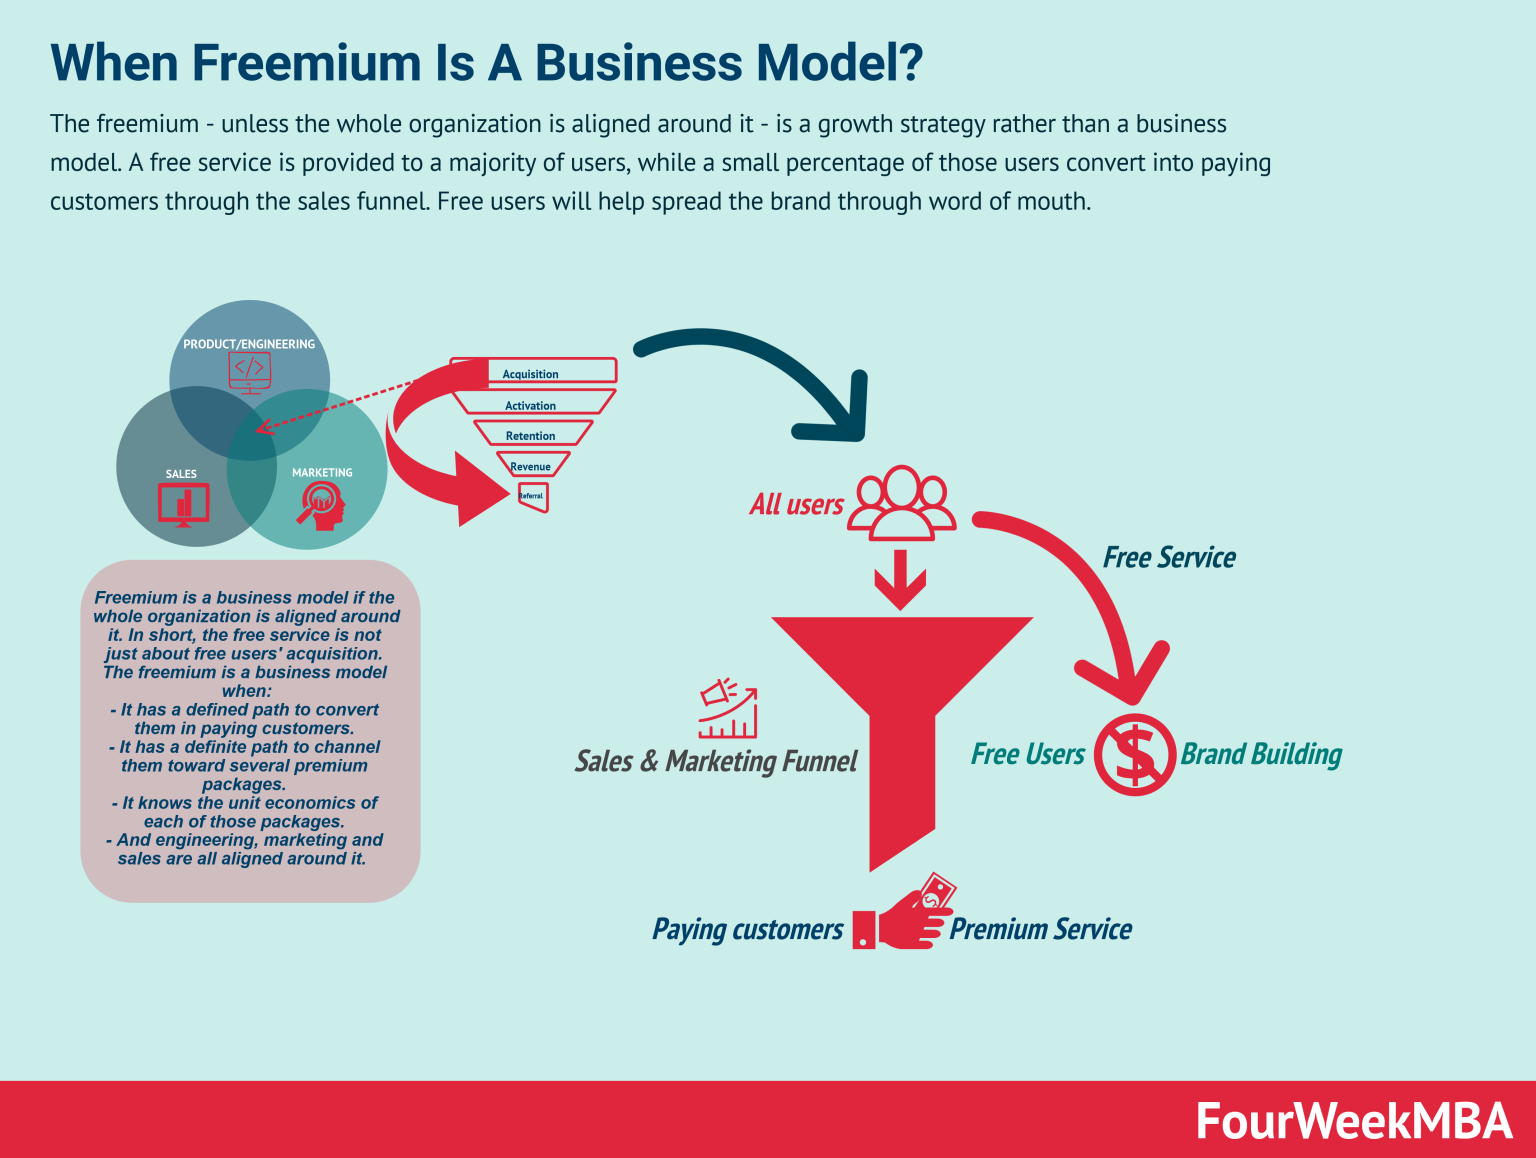 Freemium business model